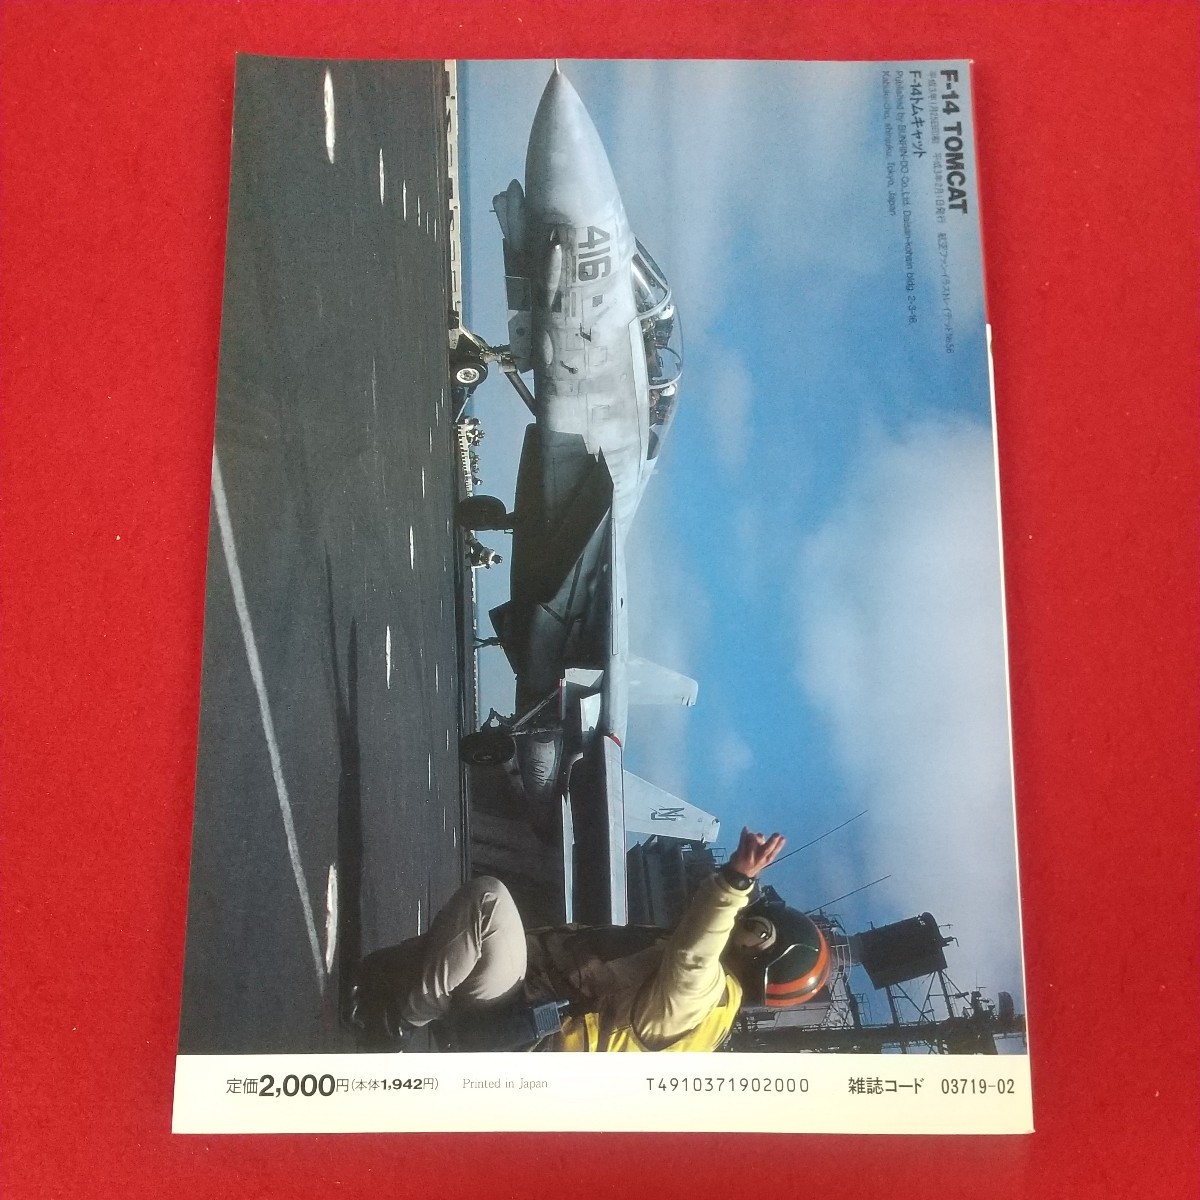 h-011*5 F-14 TOMCAT F-14 Tomcat мир. знаменитый истребитель No.4 Koku Fan иллюстрации Ray tedoNo.56 1991 год 2 месяц 1 день выпуск документ ..